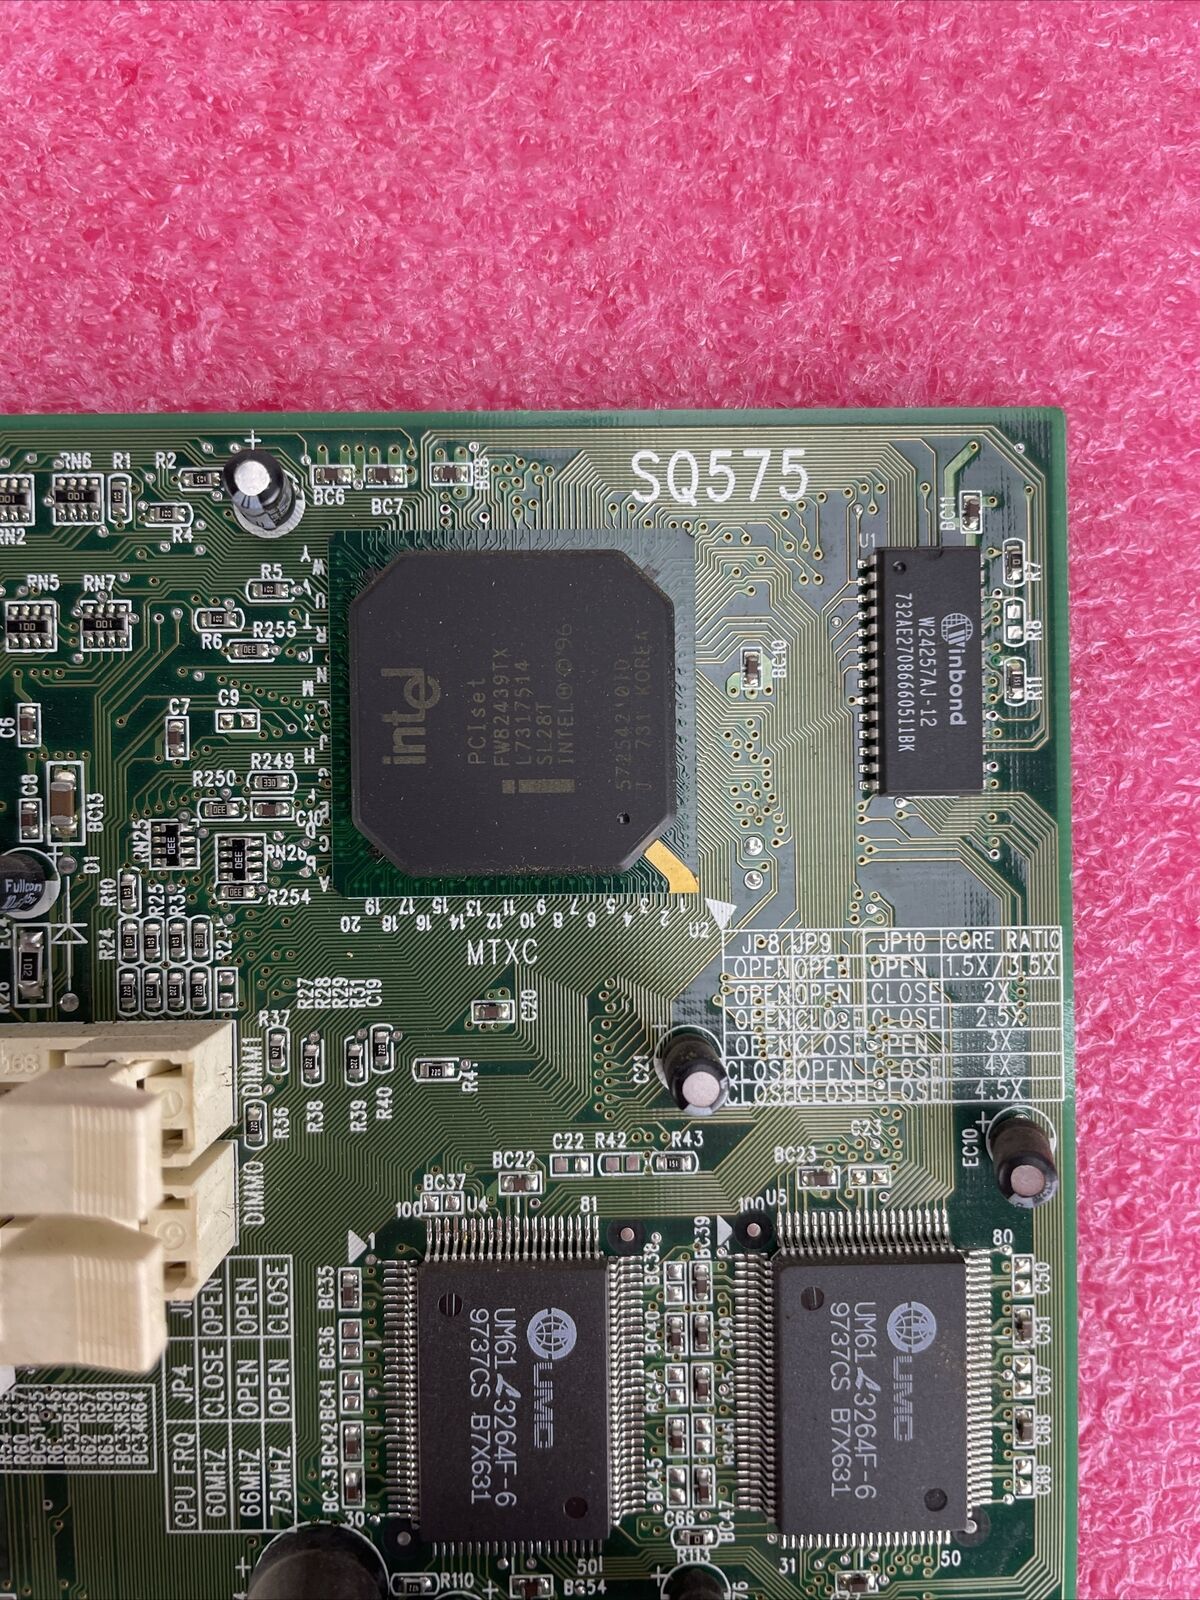 Mitsuba BCM SQ575 Motherboard Intel Pentium MMX 166MHz 32MB RAM